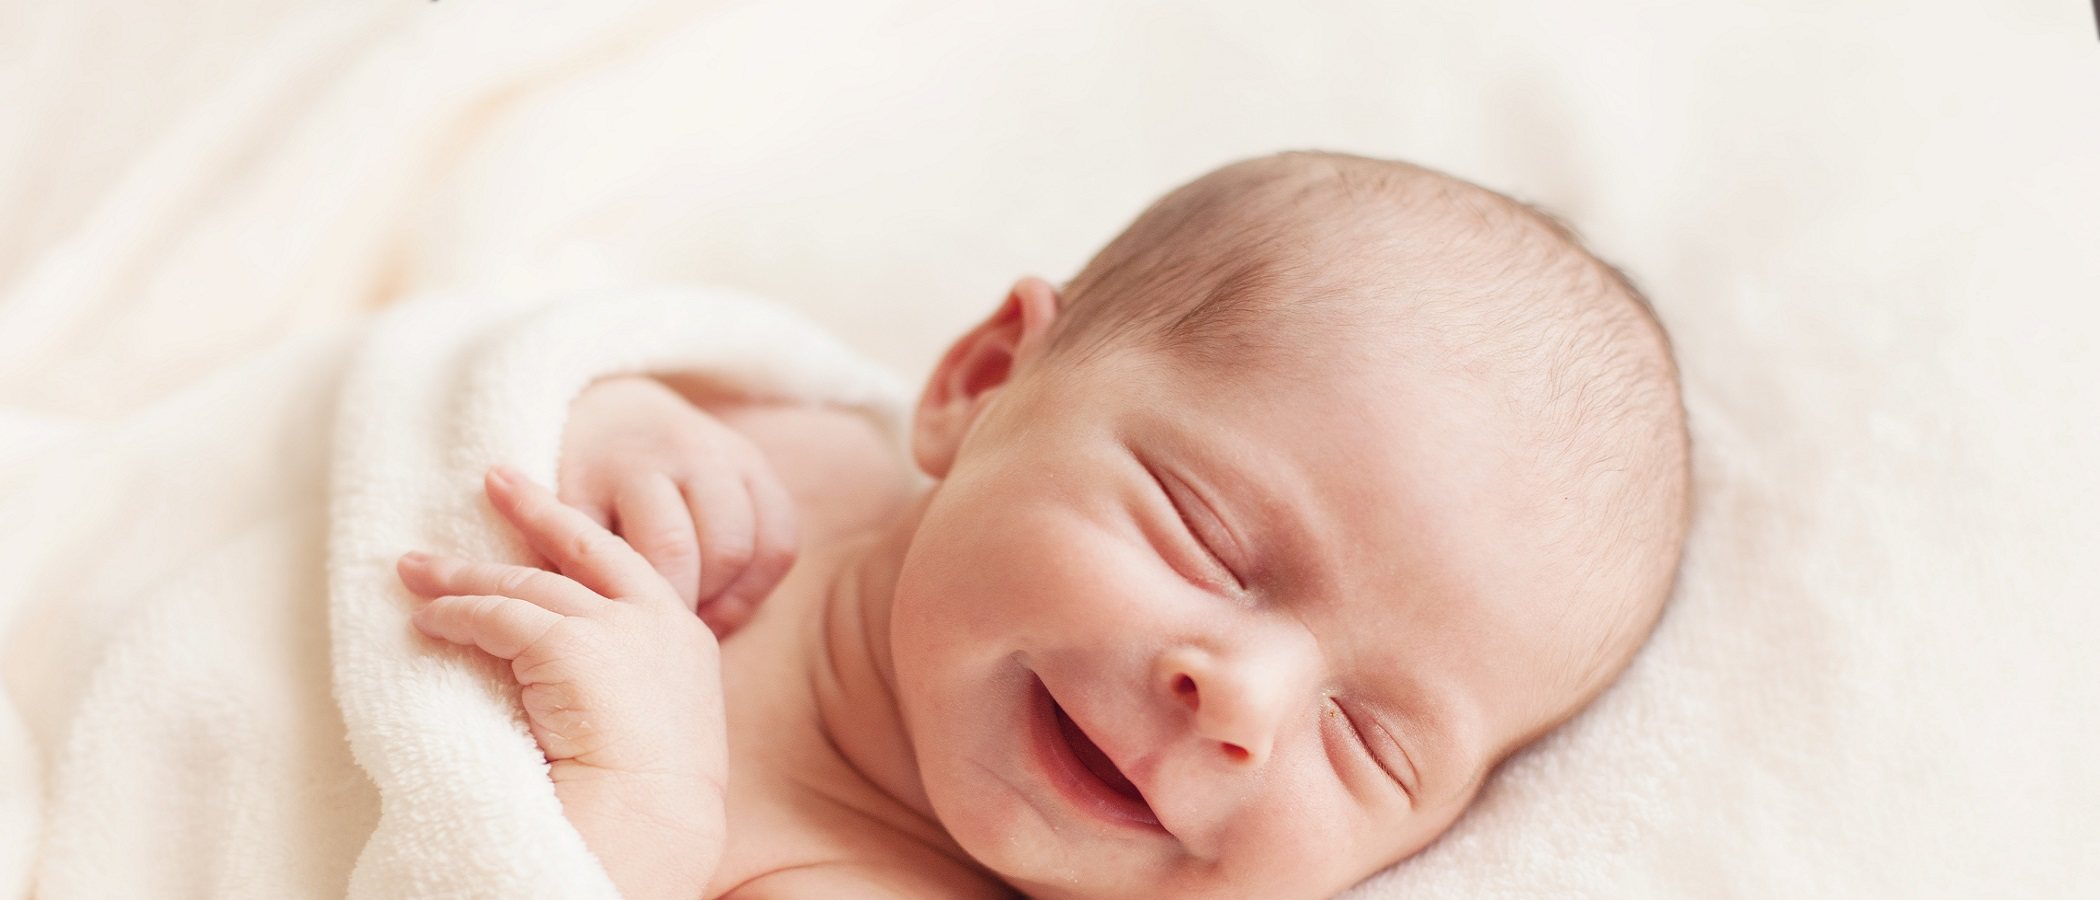 Cómo saber si un recién nacido tiene mucho calor